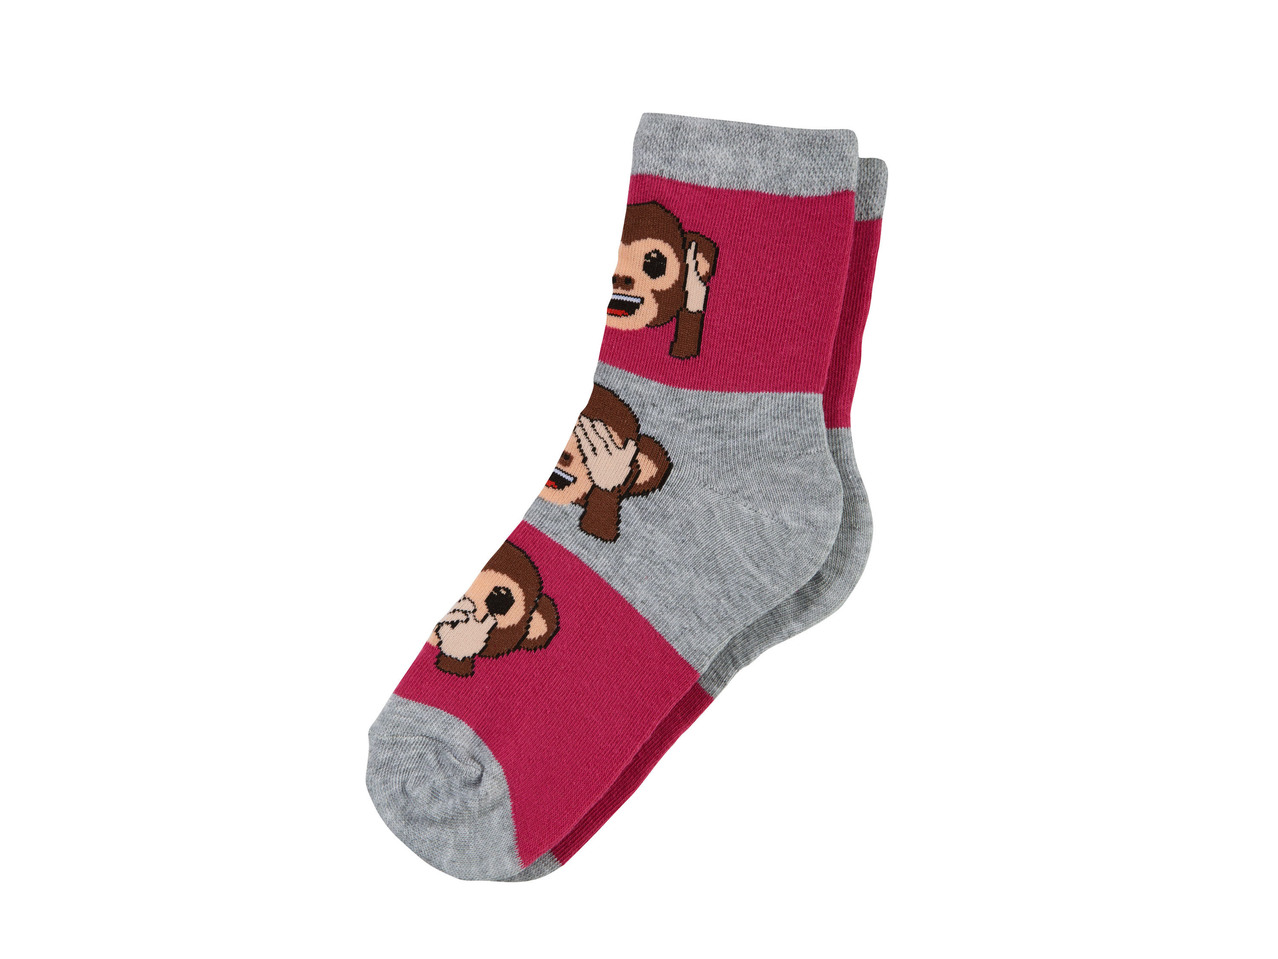 Girls' Socks, 2 pairs